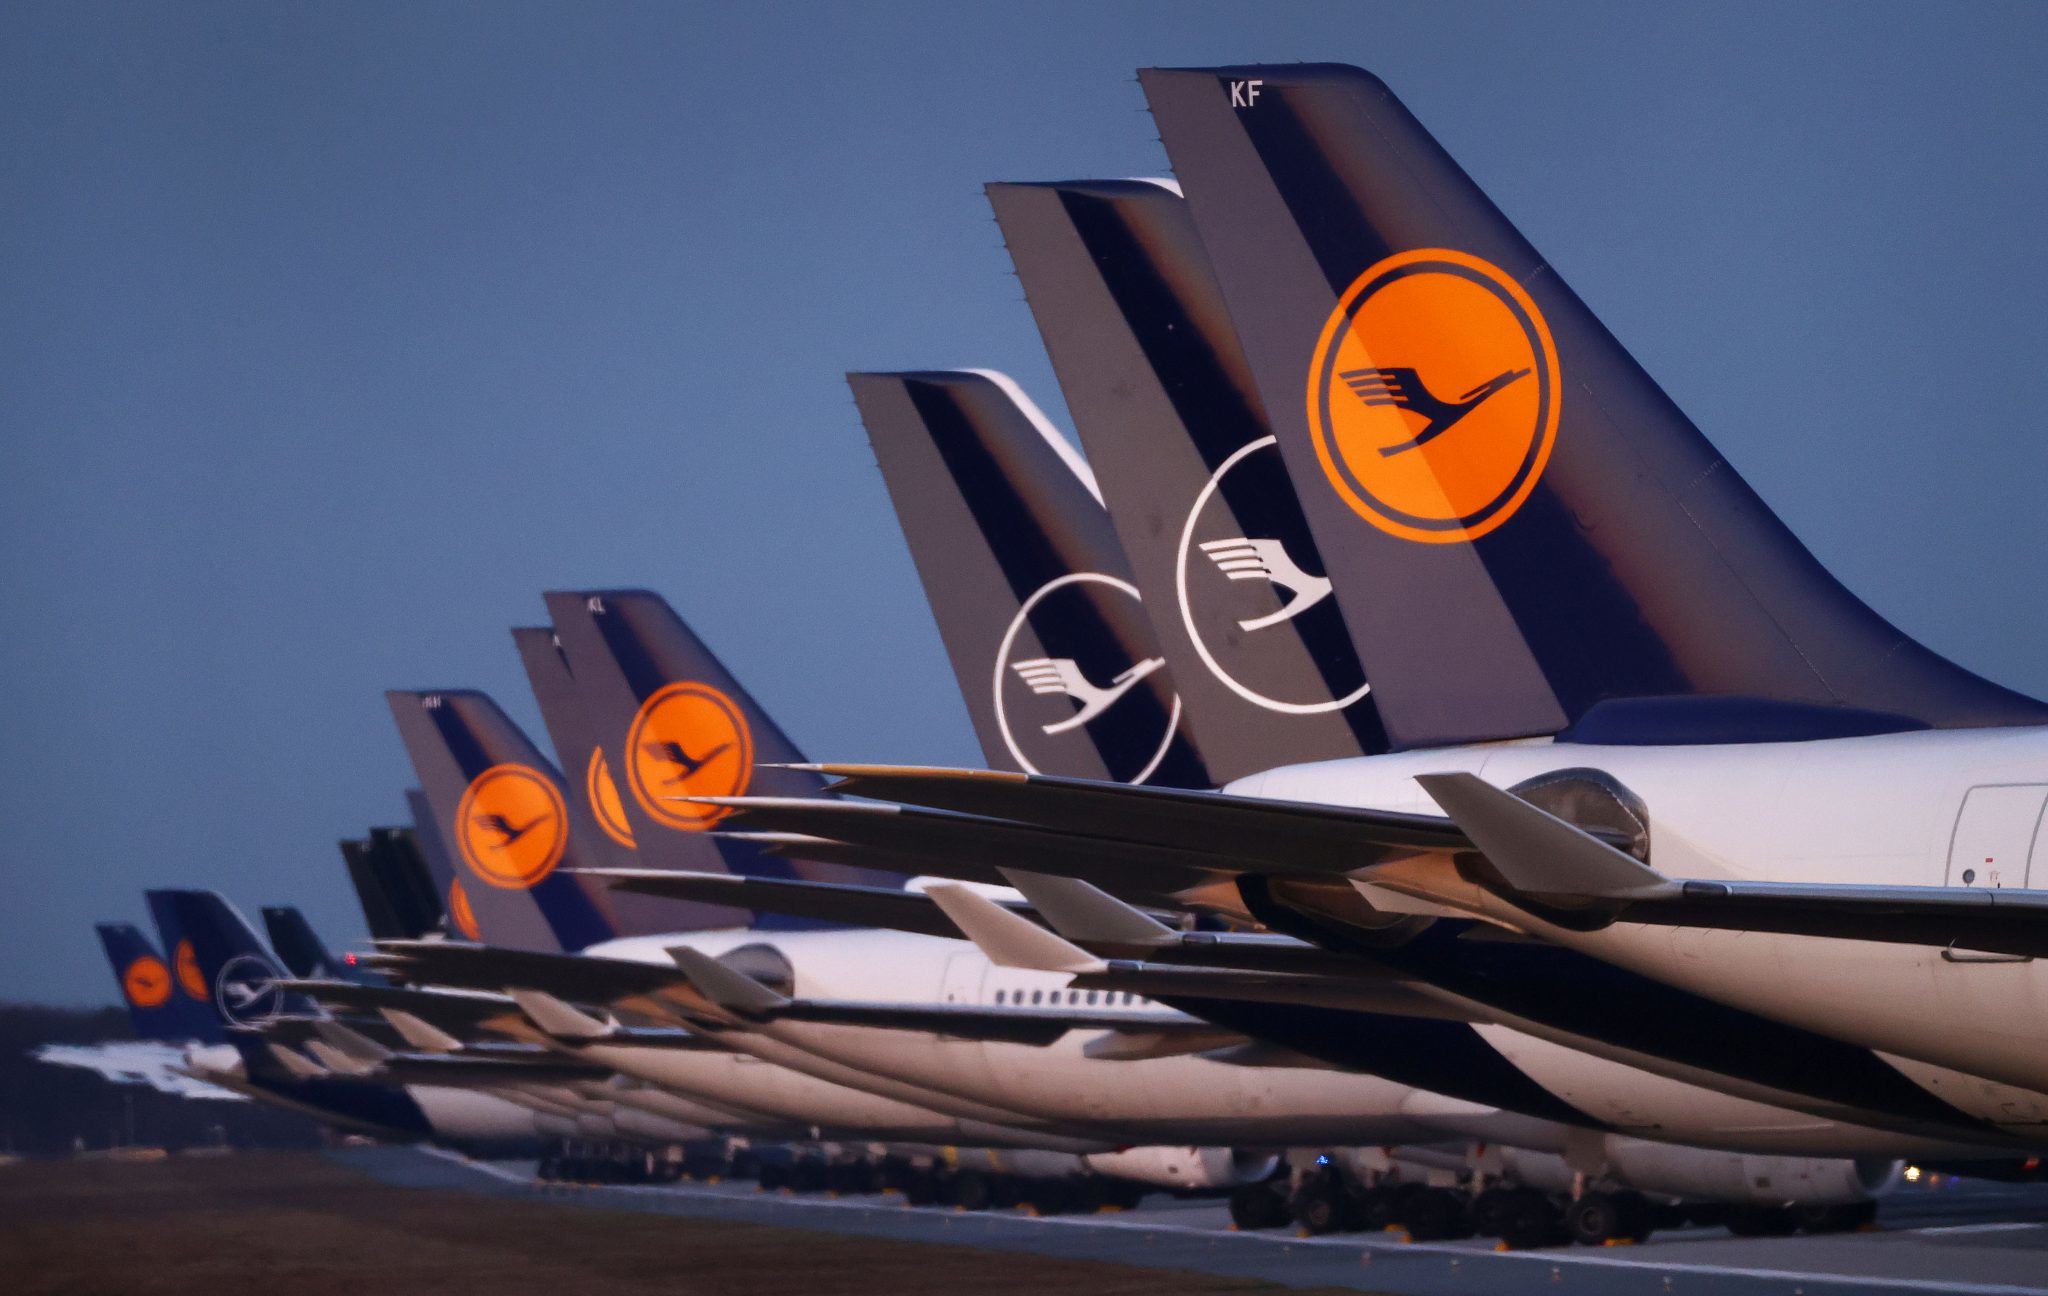 قطع كابل أثناء أعمال البناء يقرع أنظمة Lufthansa في وضع عدم الاتصال مما يترك آلاف الركاب عالقين